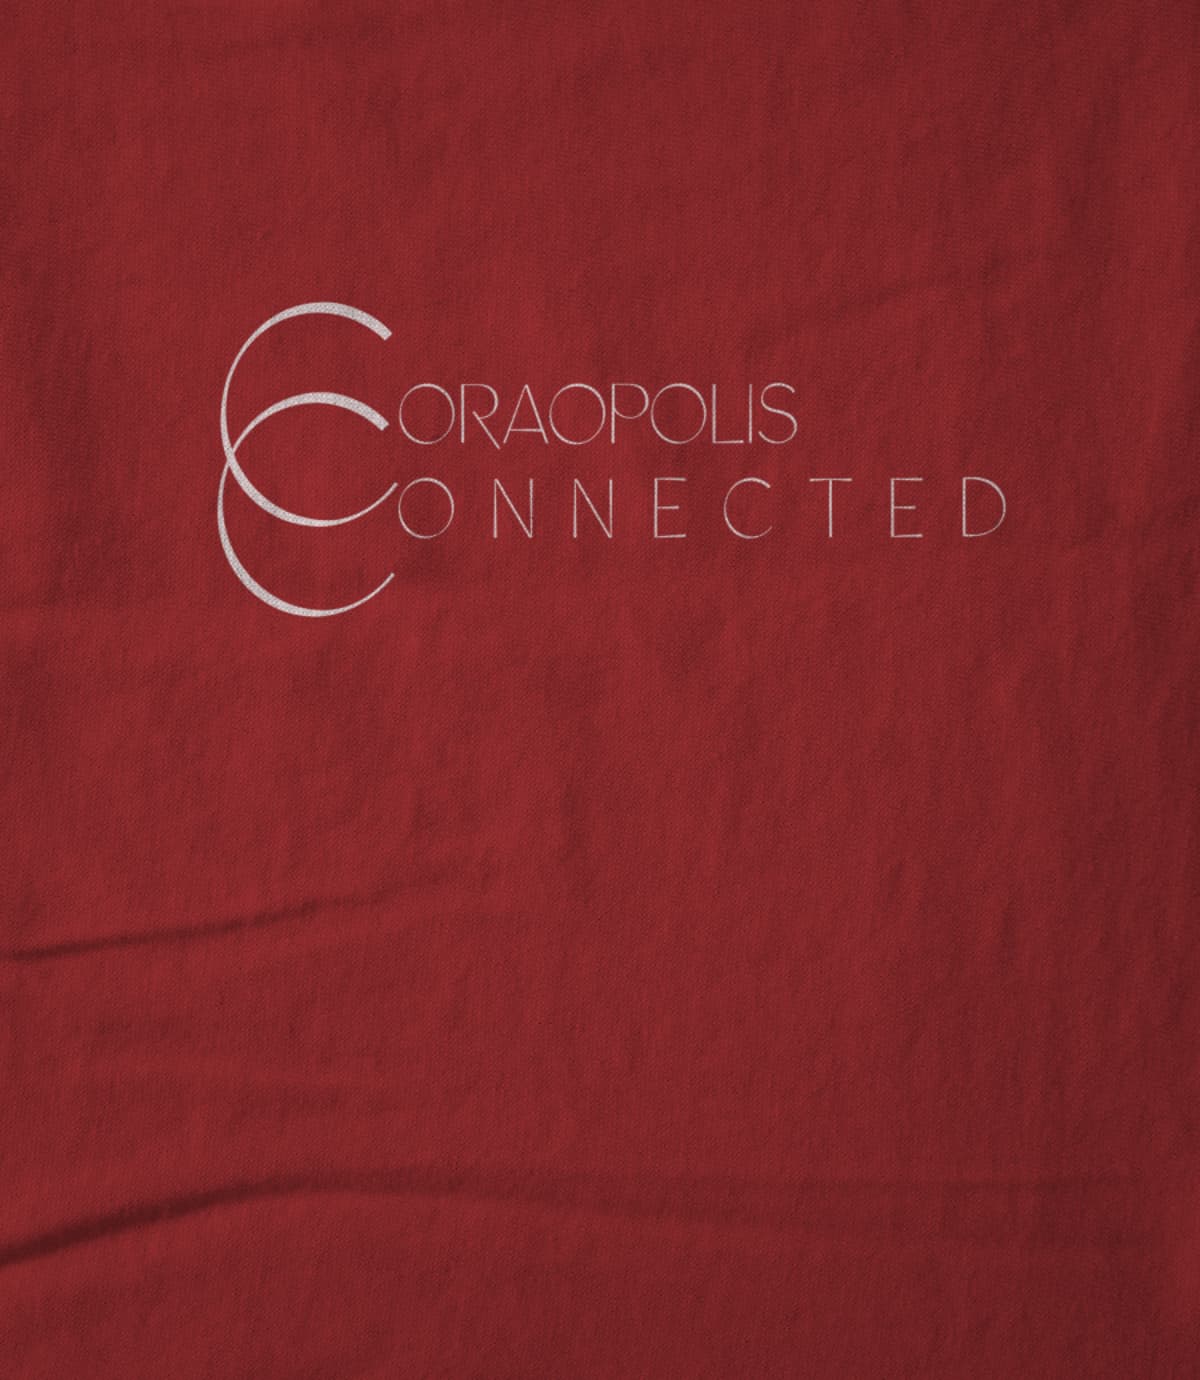 Coraopolis Connected